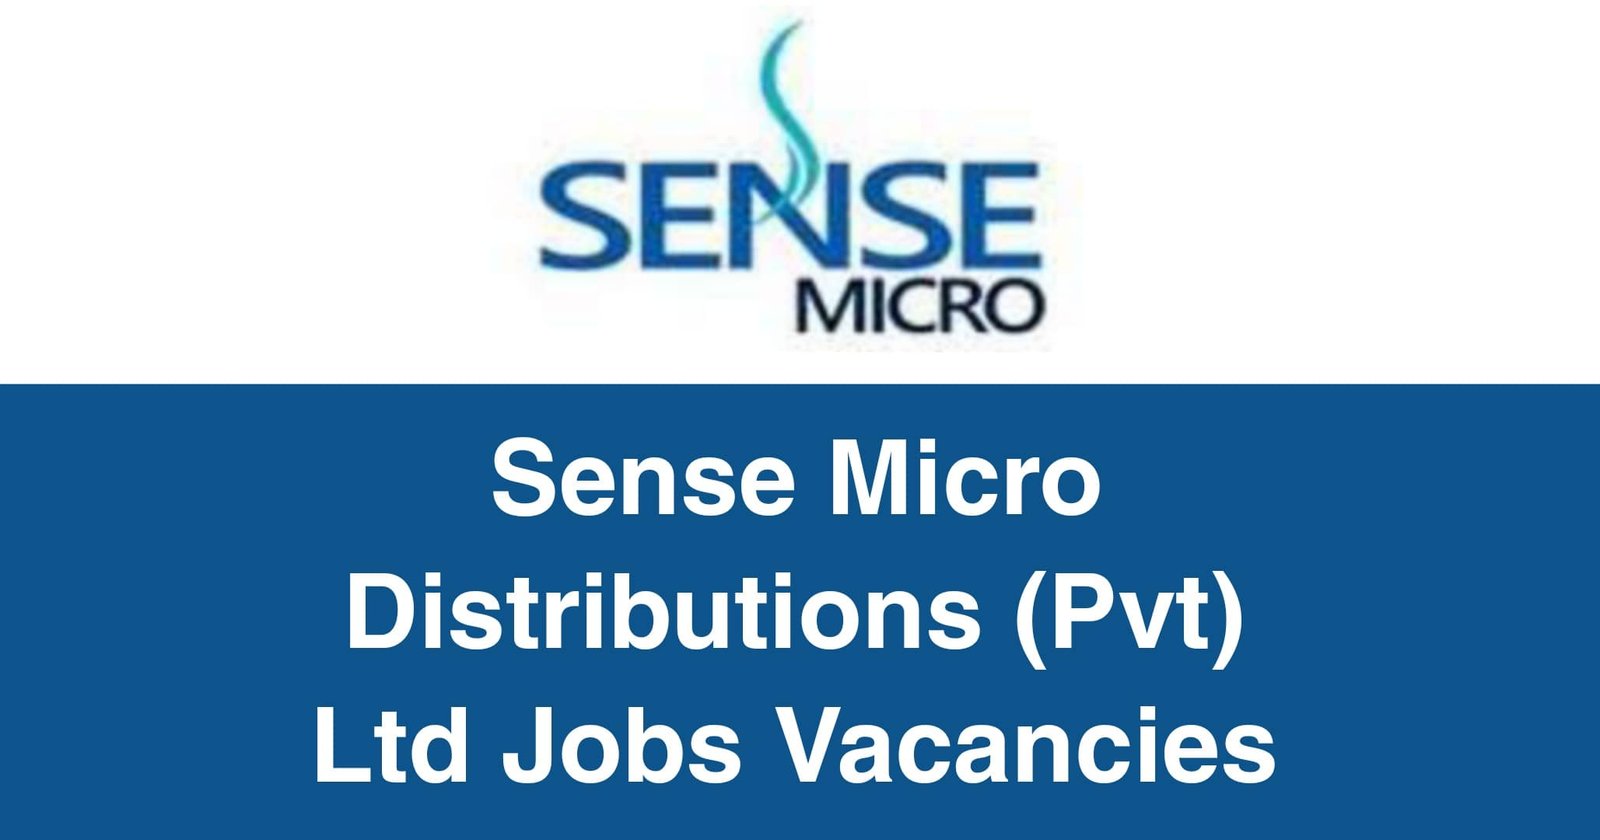 Sense Micro Distributions (Pvt) Ltd Jobs Vacancies